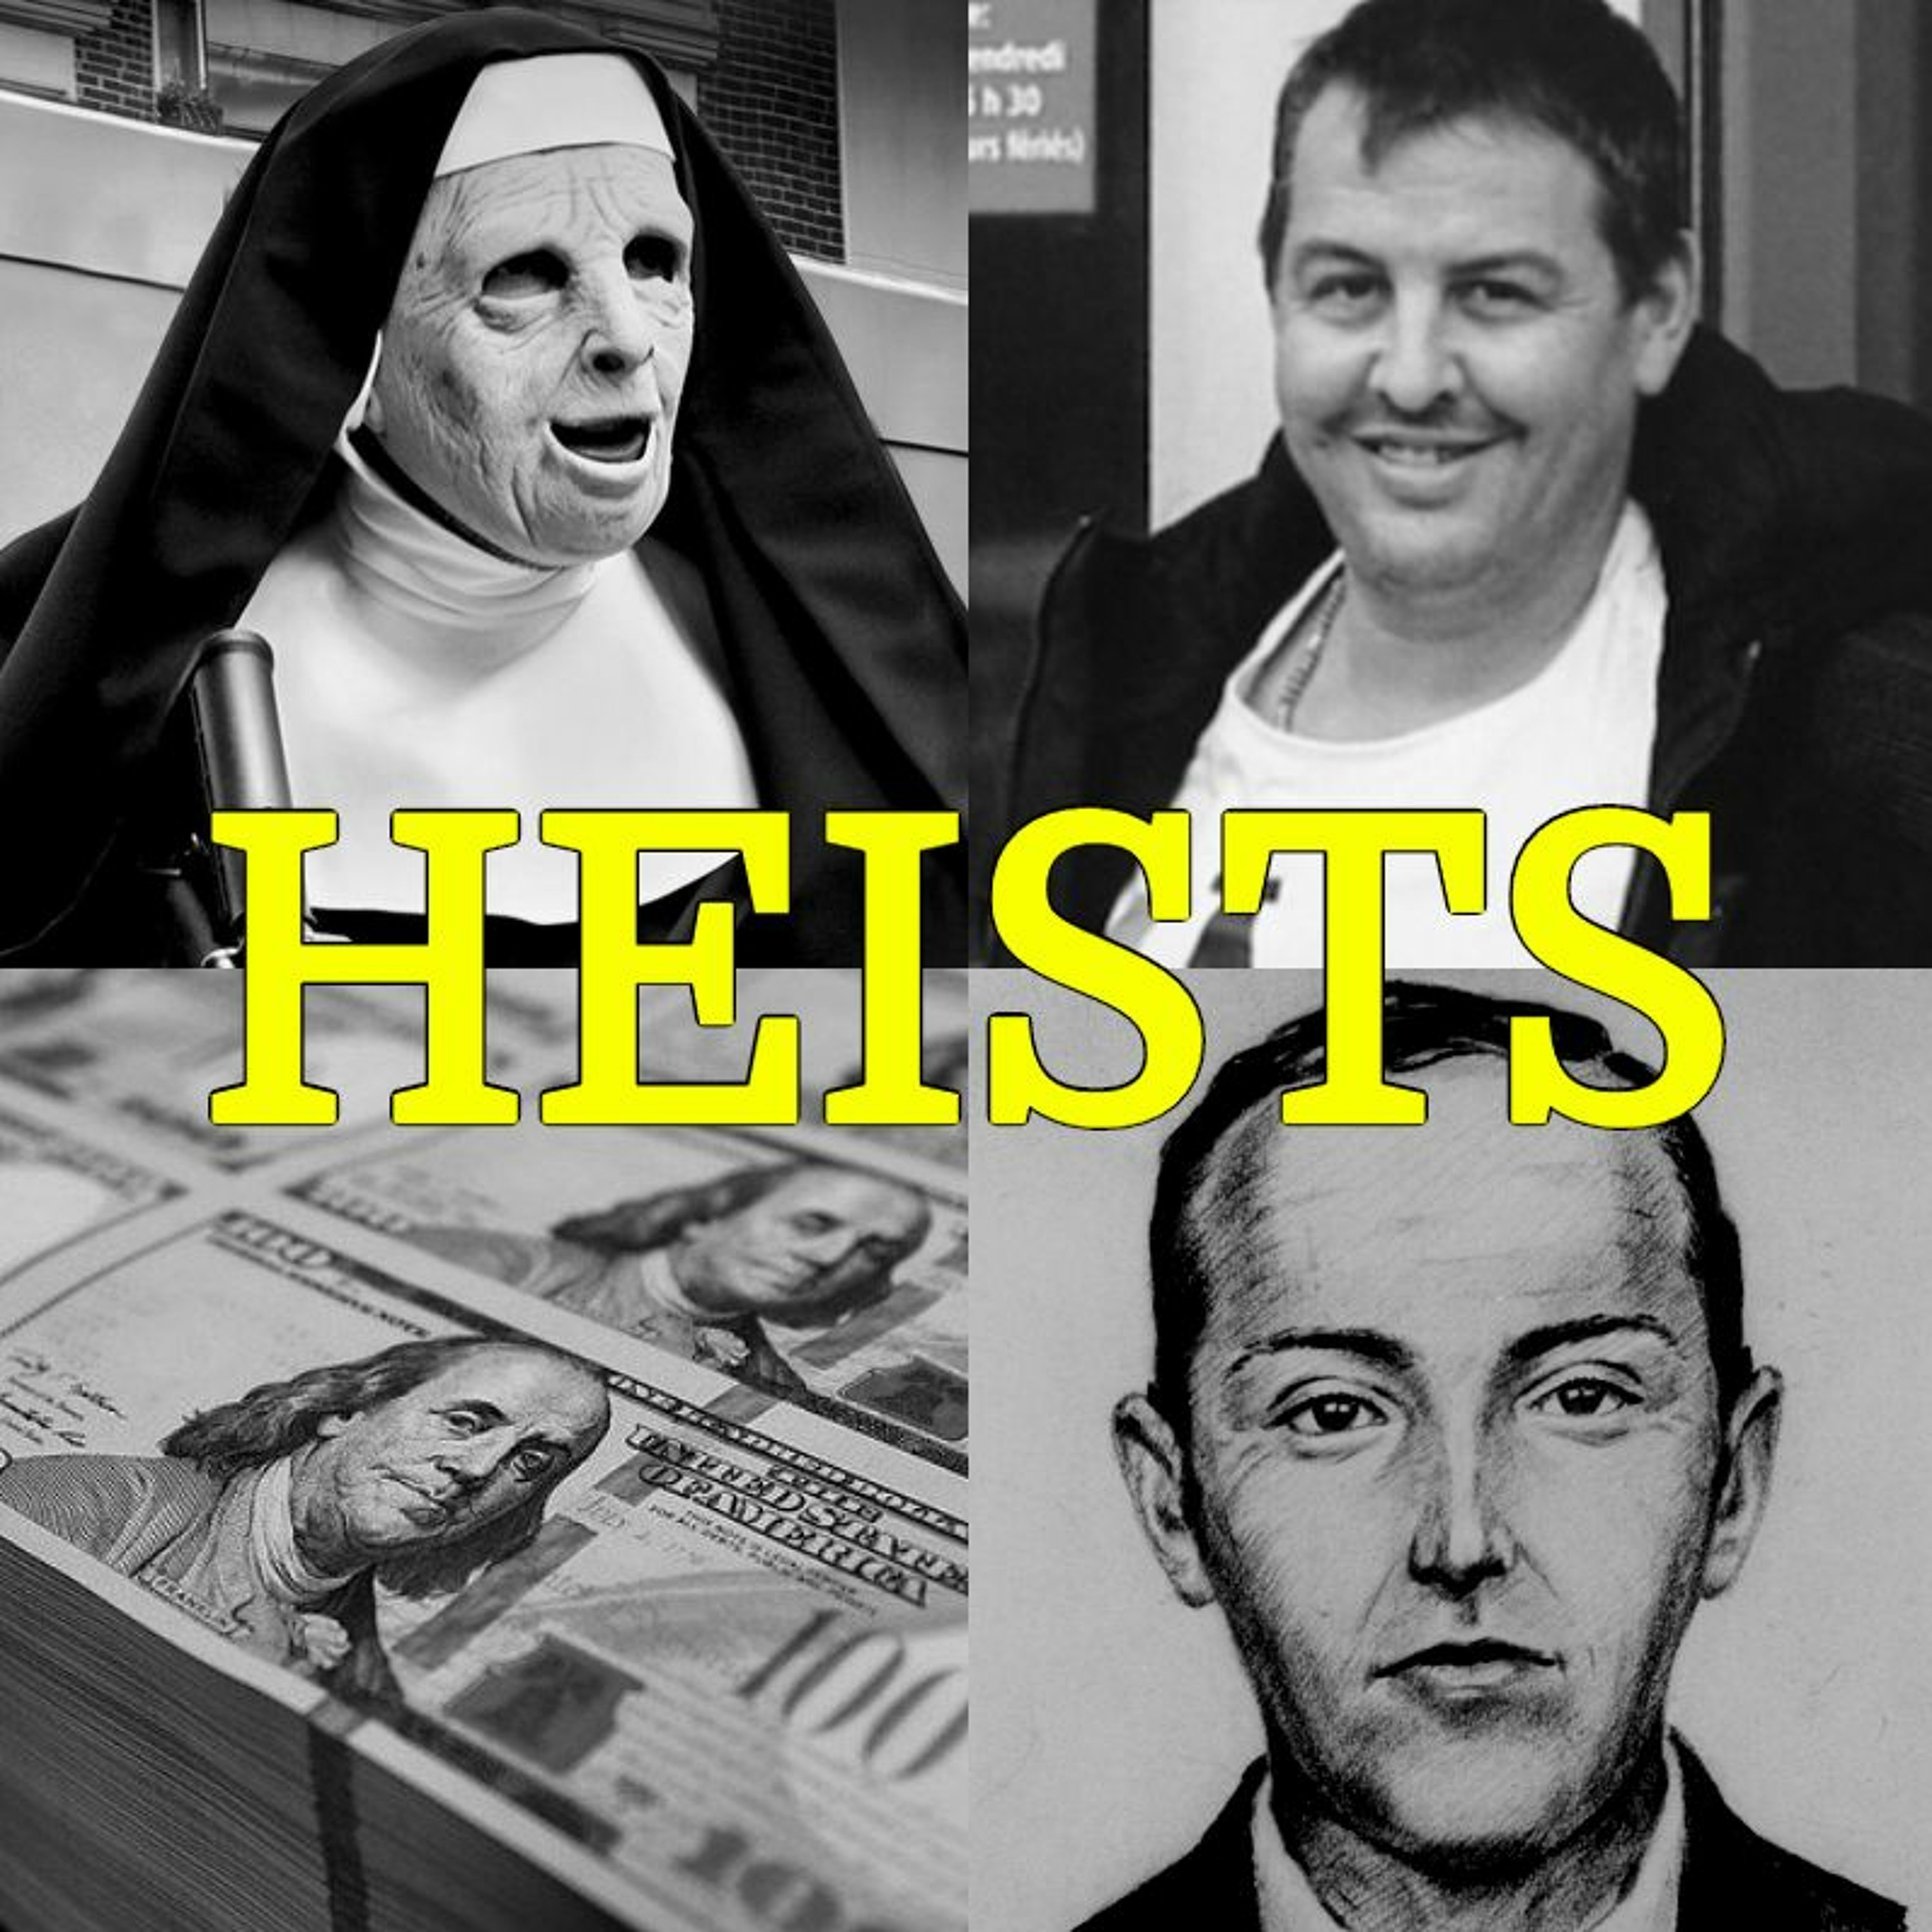 027 - Heists